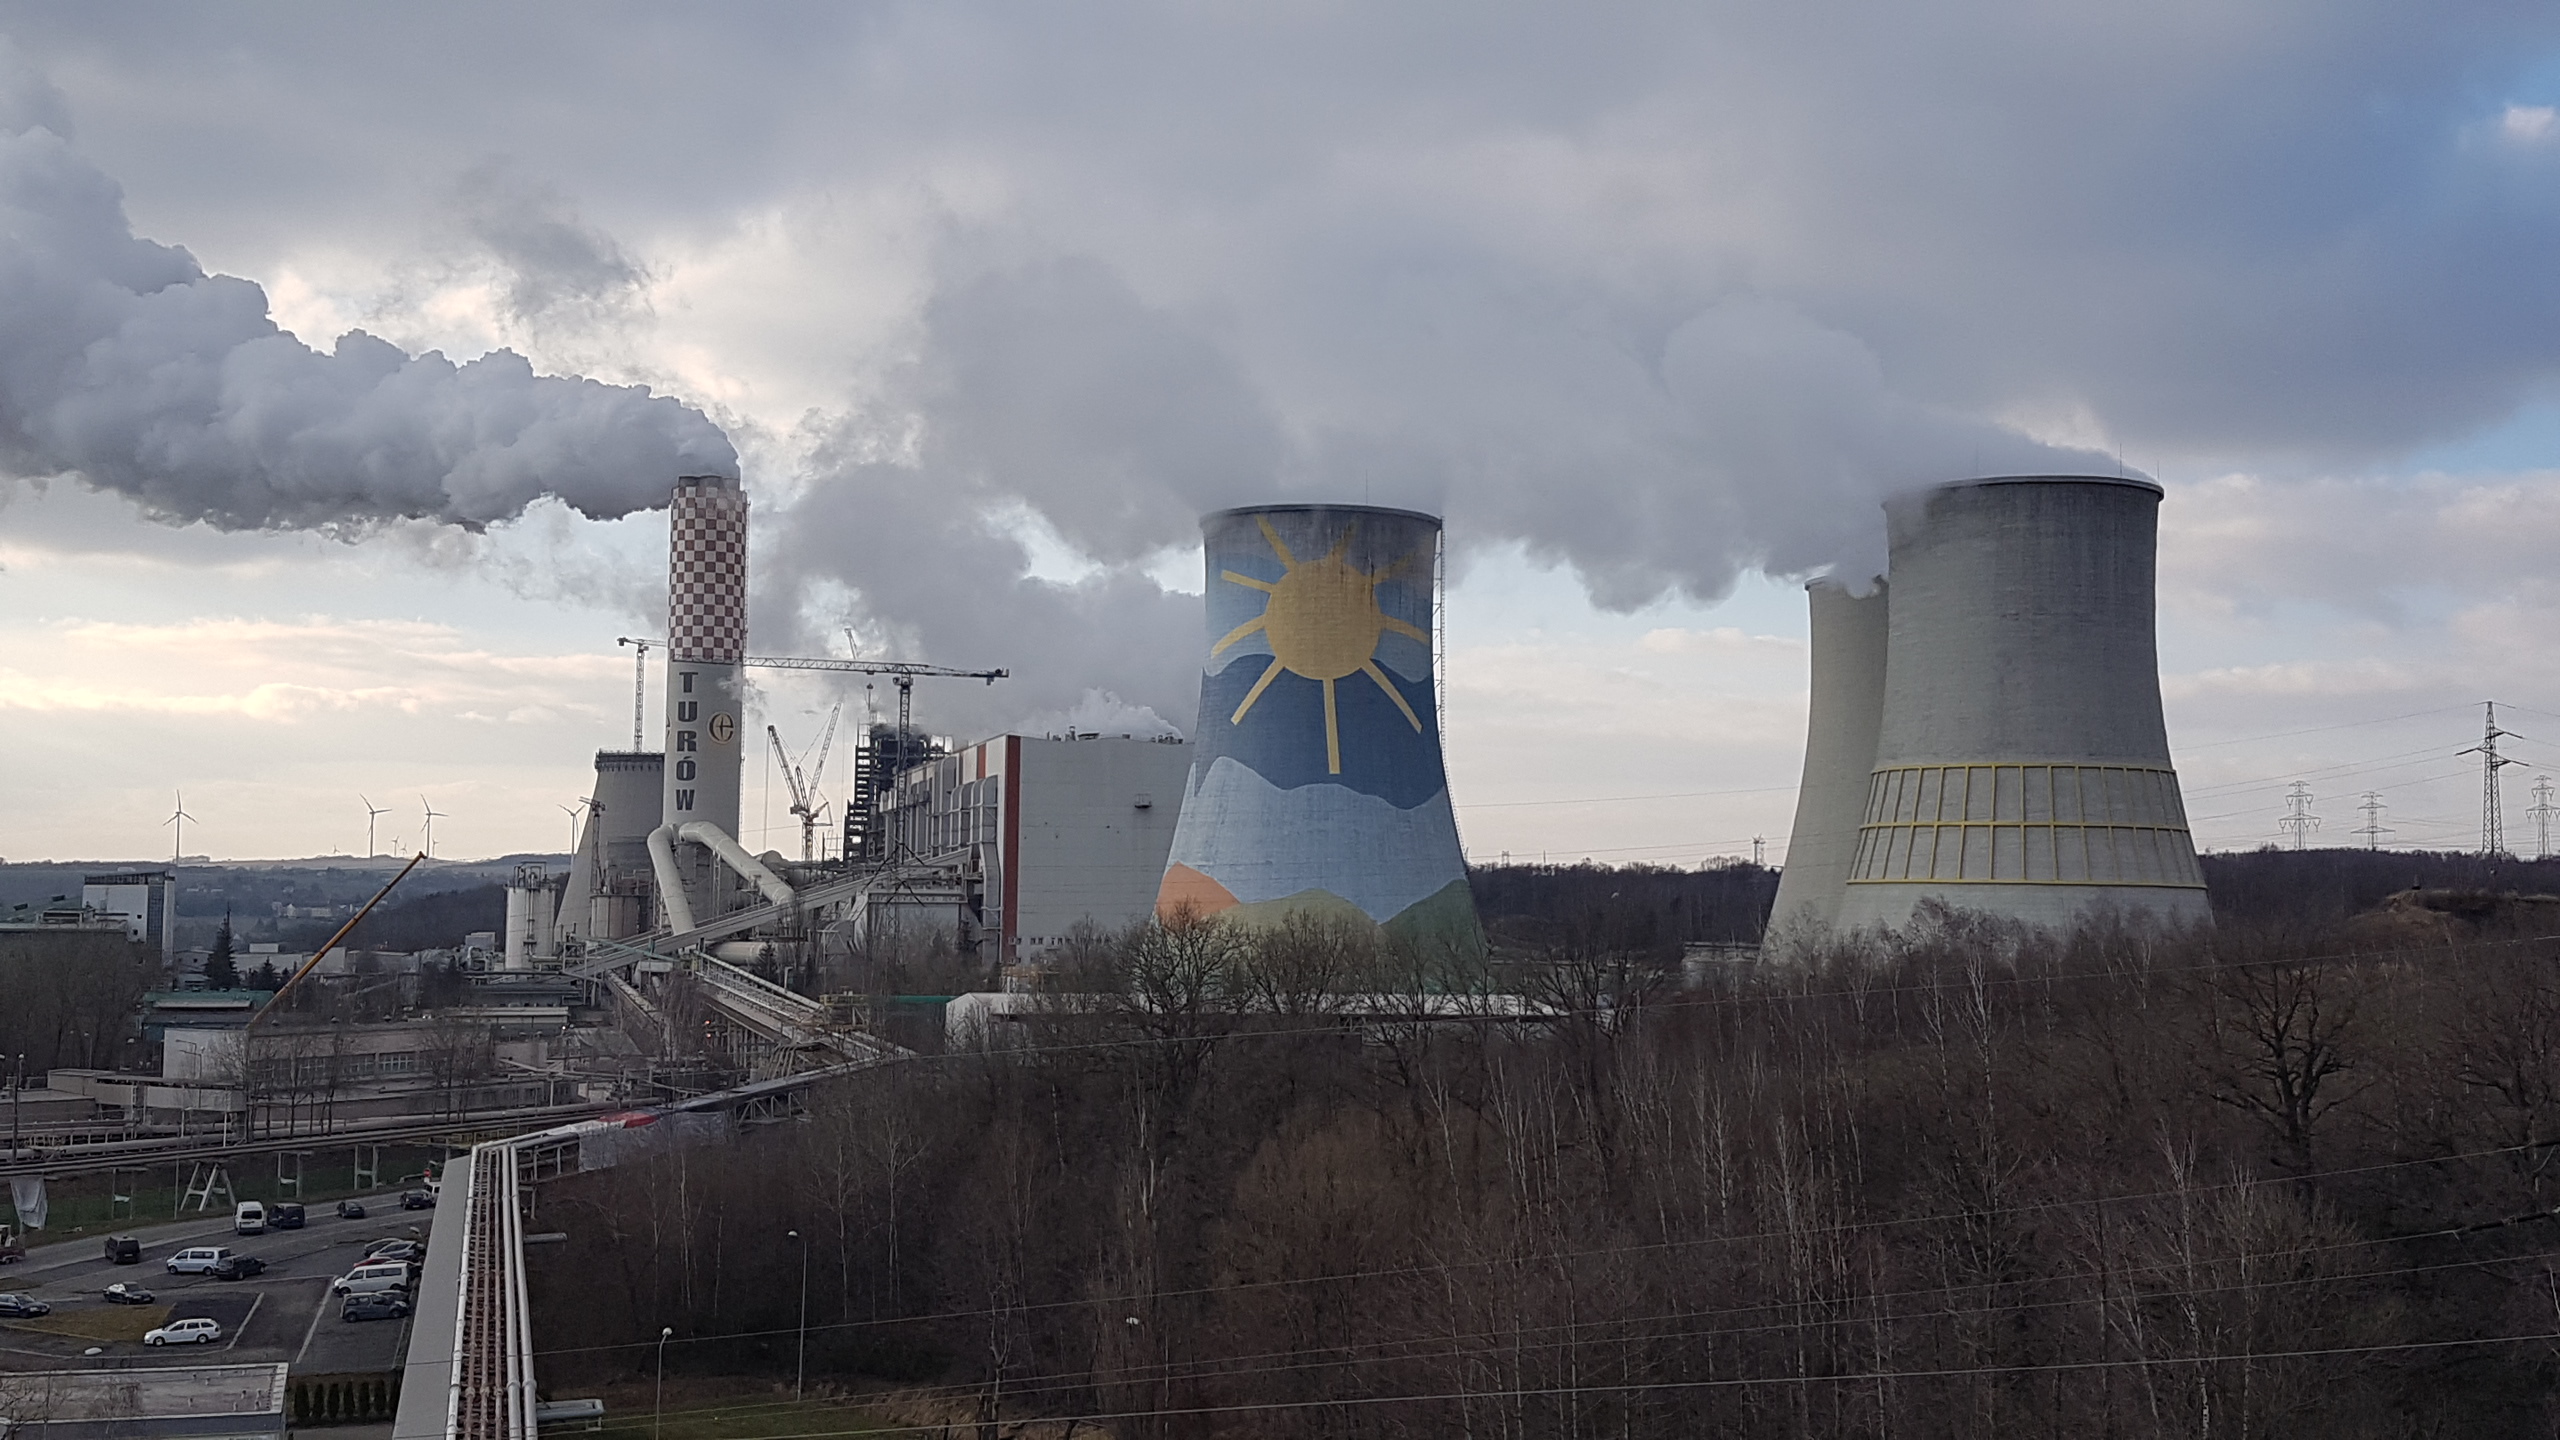 Elektrownia Turów, Przemiałownia - Bogatynia 2018